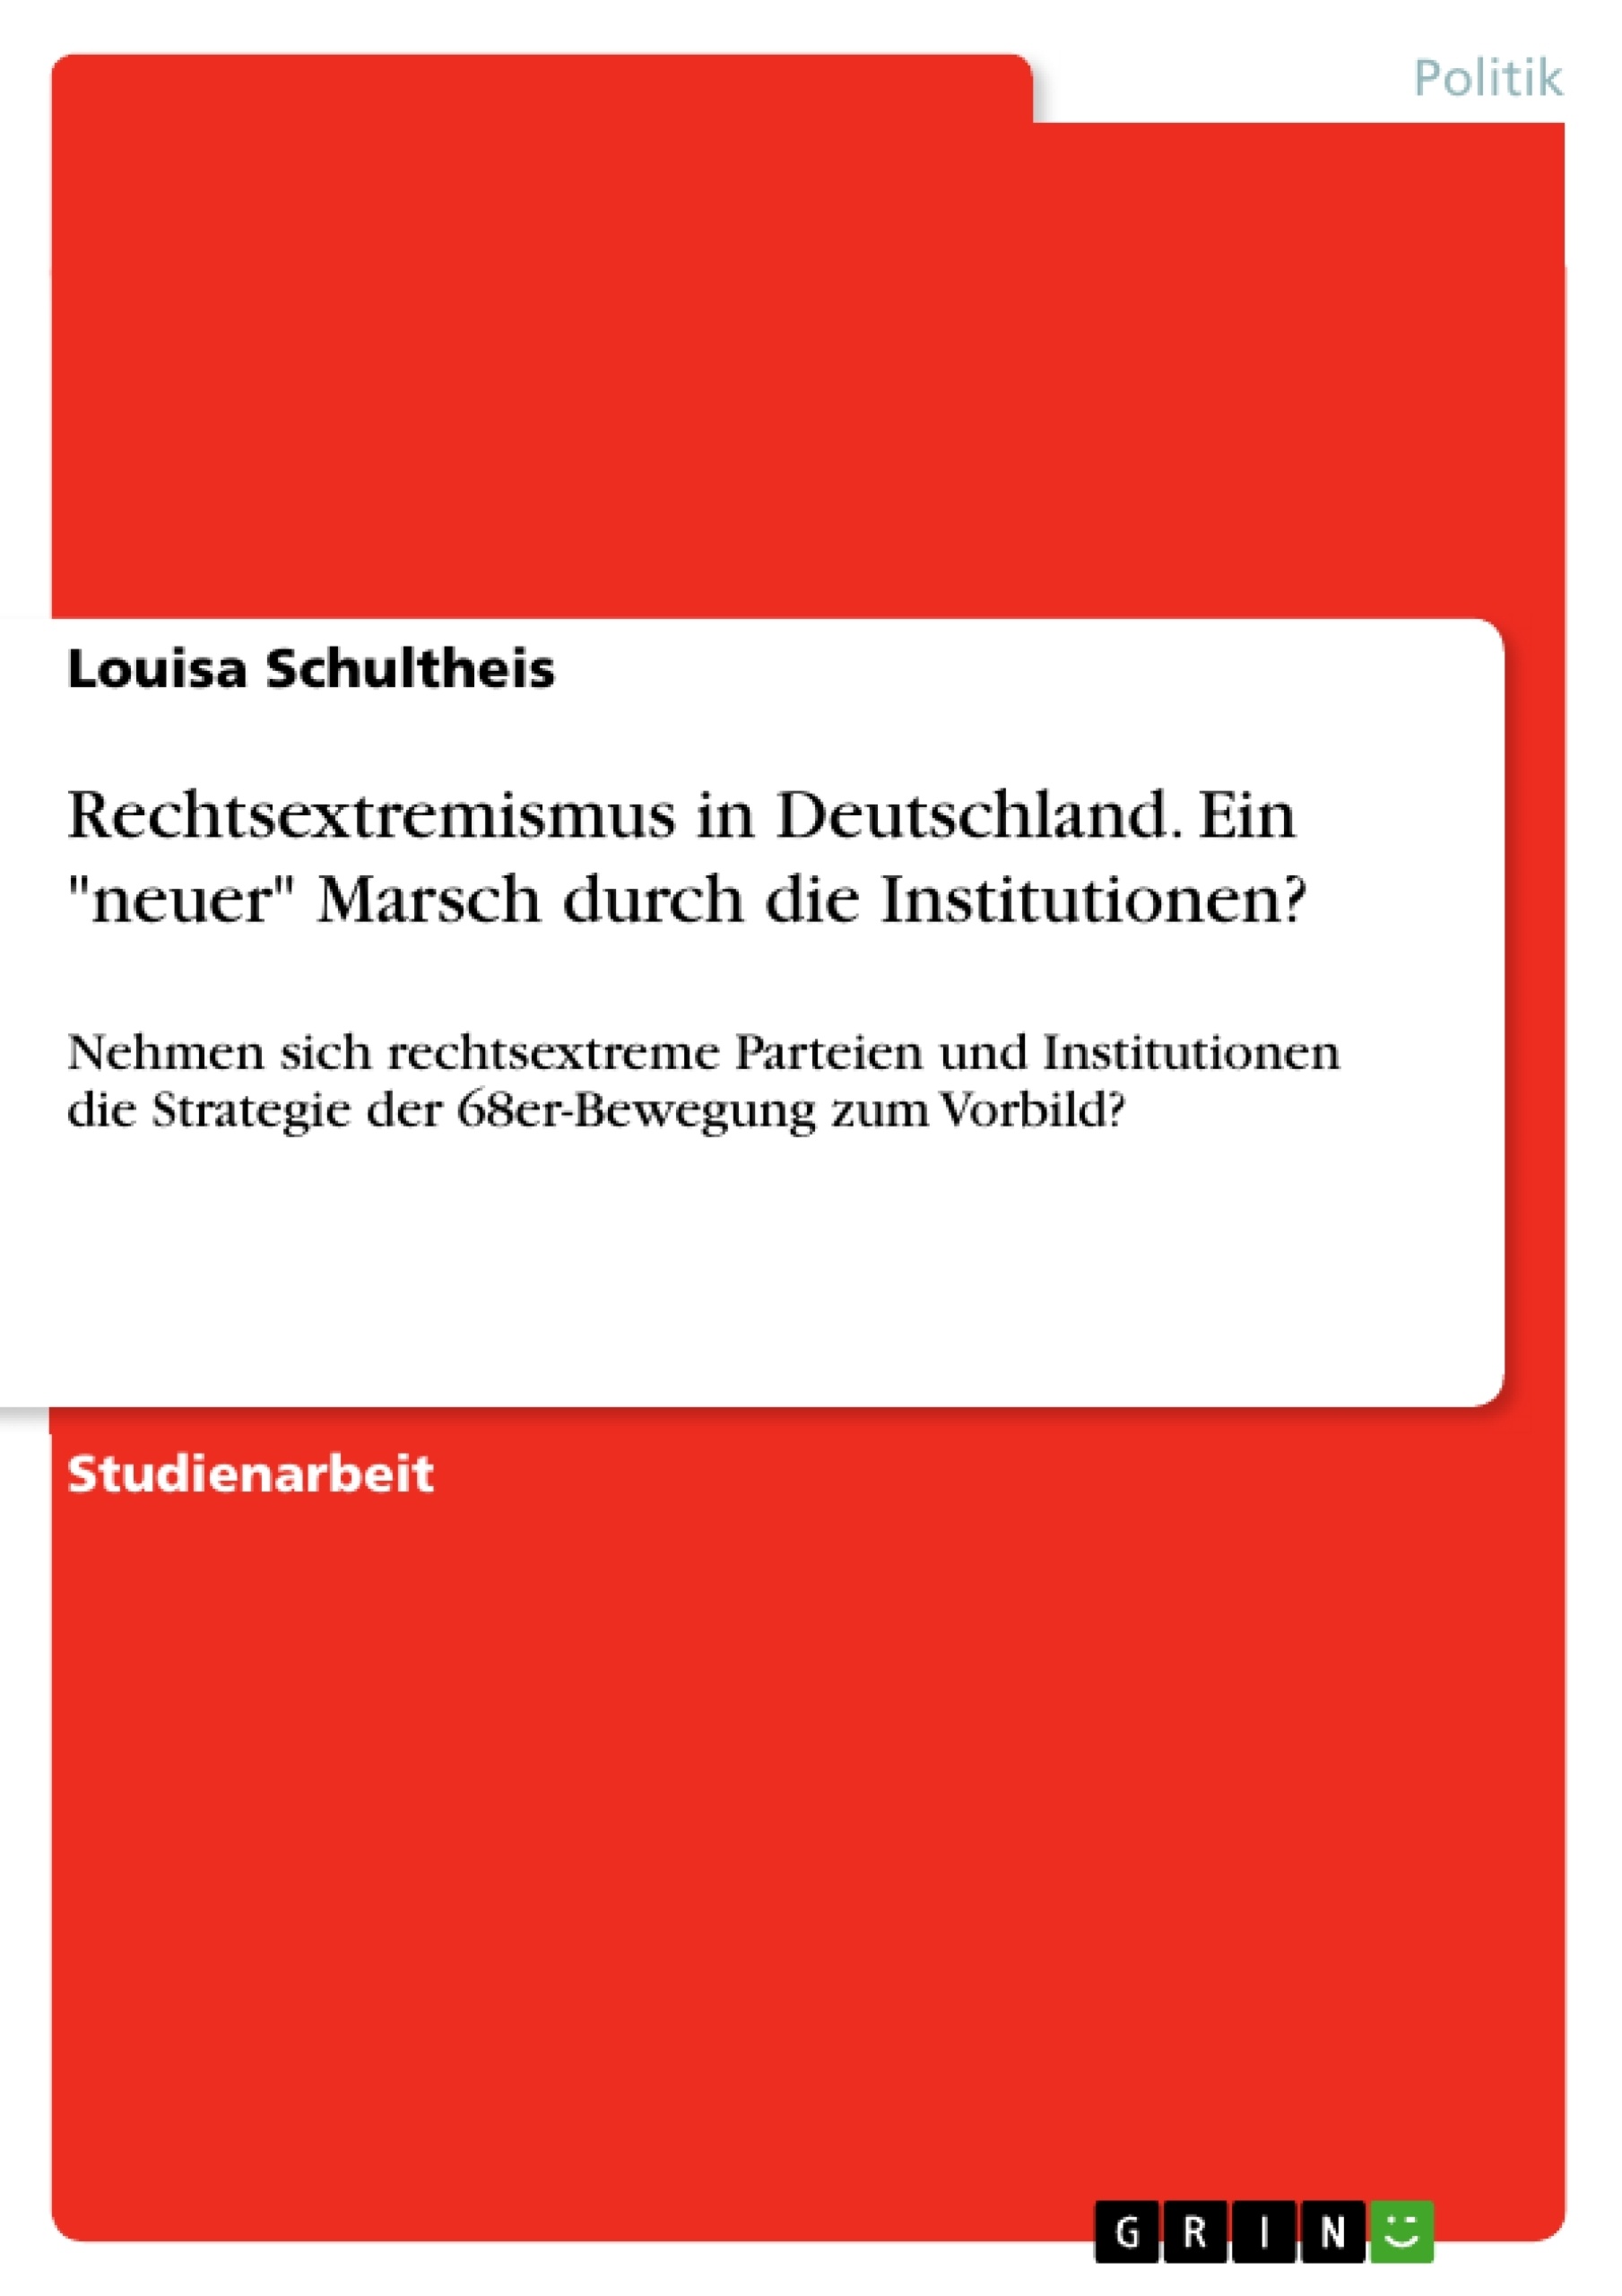 Title: Rechtsextremismus in Deutschland. Ein "neuer" Marsch durch die Institutionen?